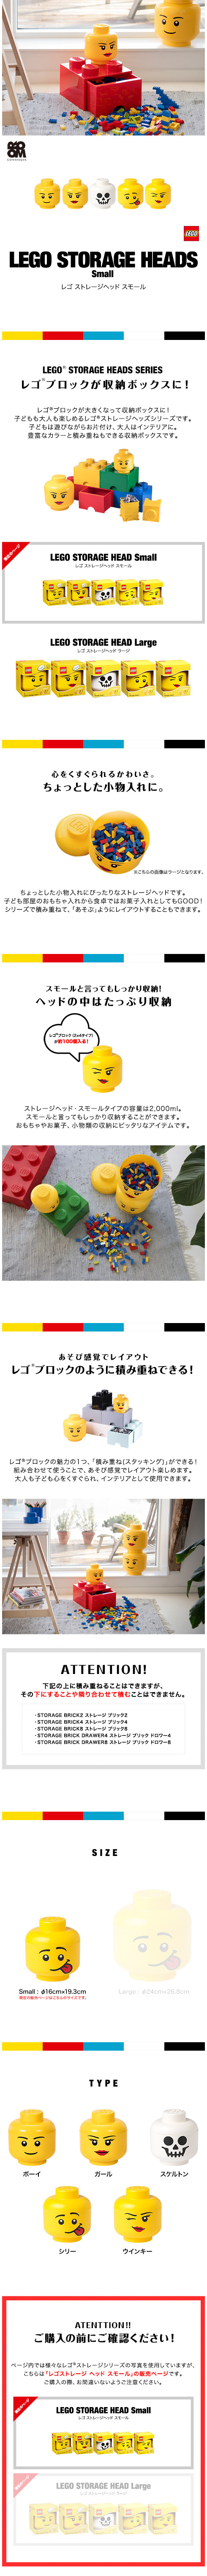 894円 品質が完璧 レゴ収納 ブロック収納 ボックス 片付け簡単 持ち運び便利 おもちゃ収納ケース 自立 折りたたみ レゴブロック ミニレゴ ミニブロック 玩具 収納箱